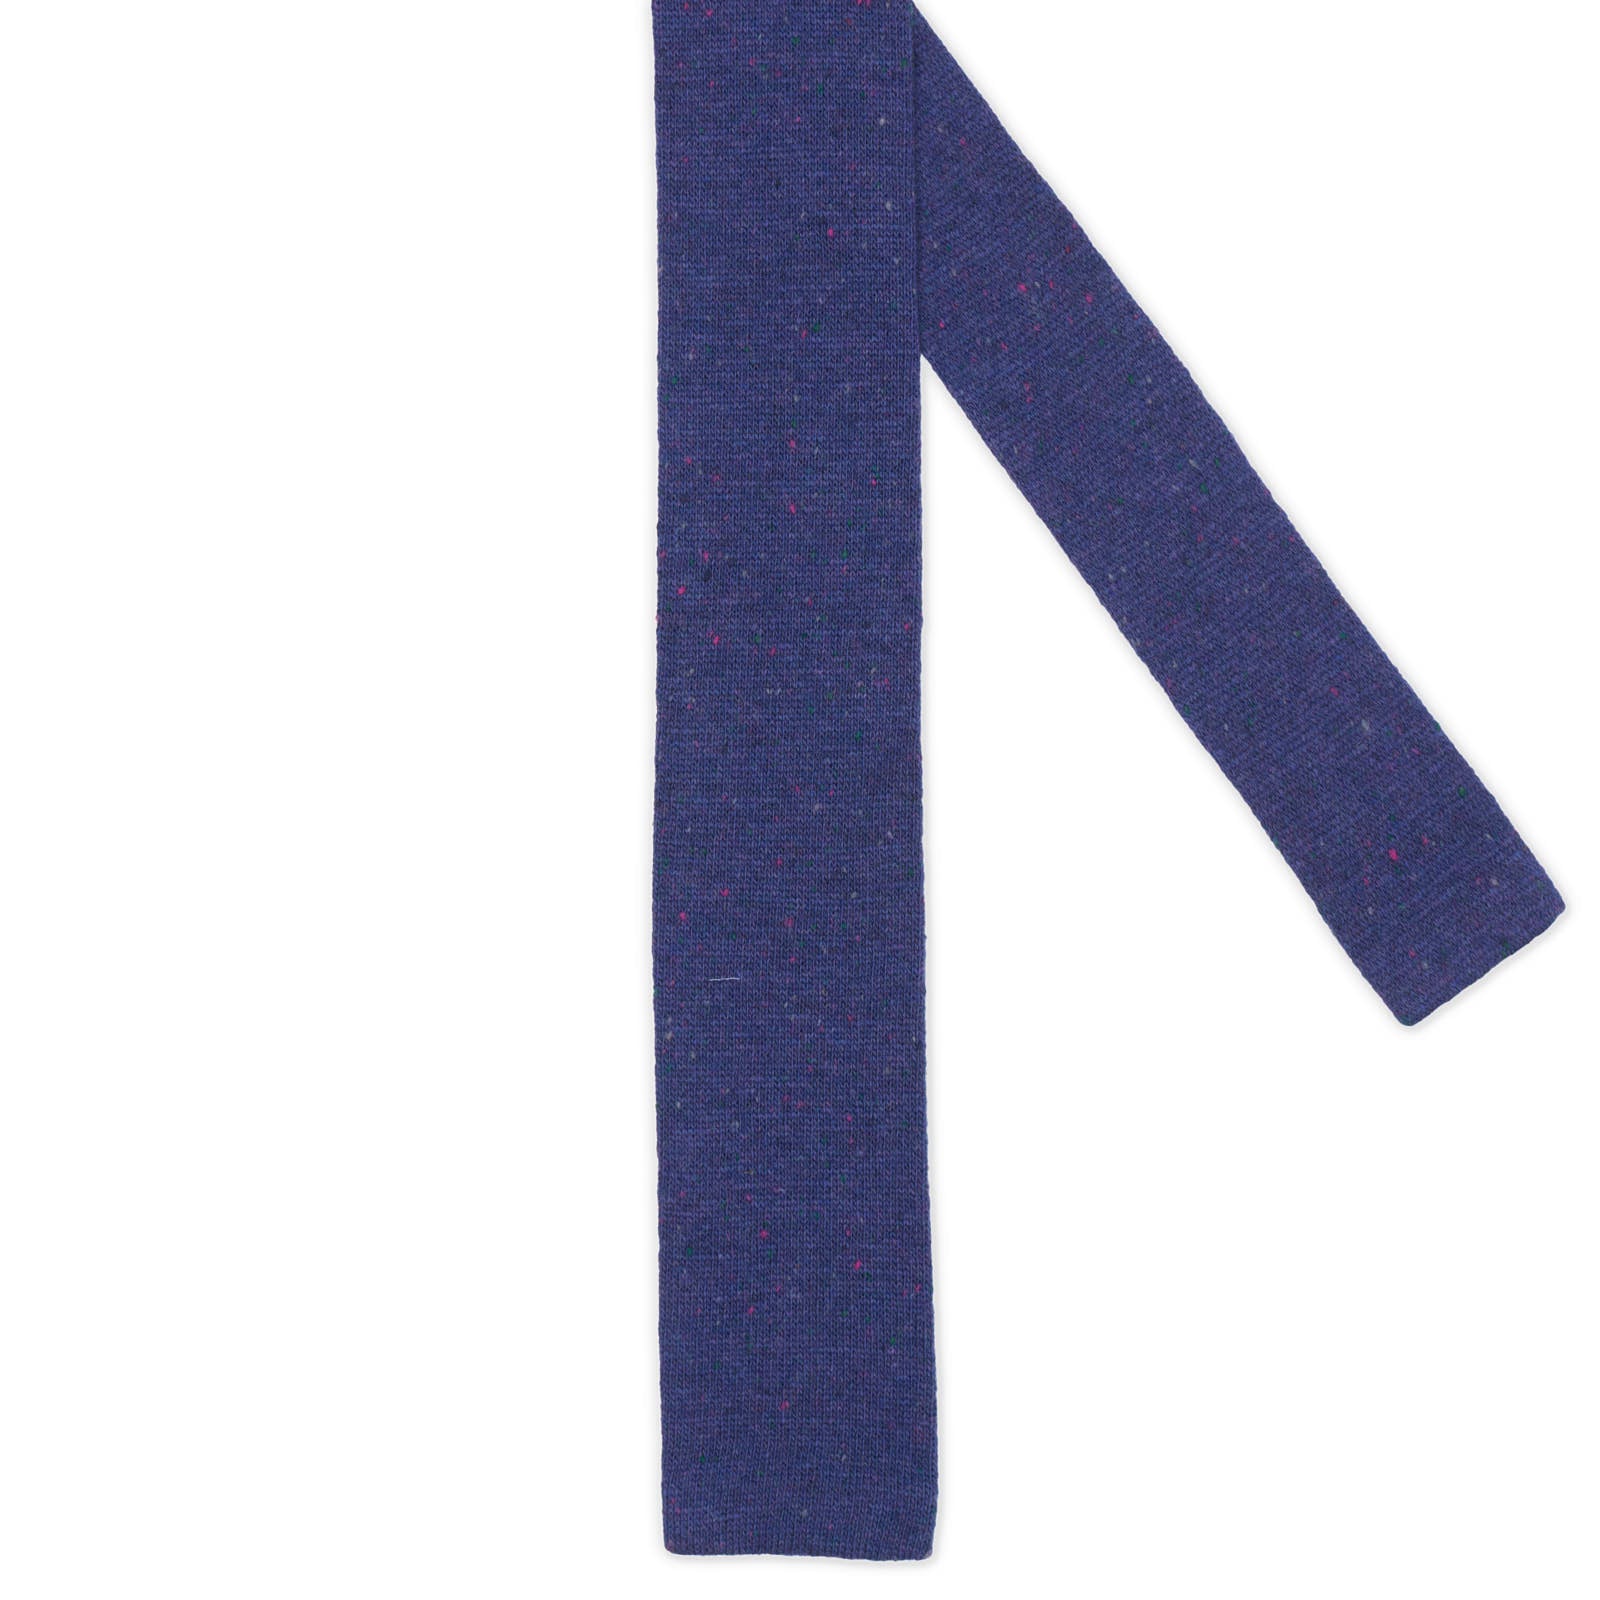 MATTABISCH FOR VANNUCCI Navy Blue Micro Pattern Wool Knit Tie NEW